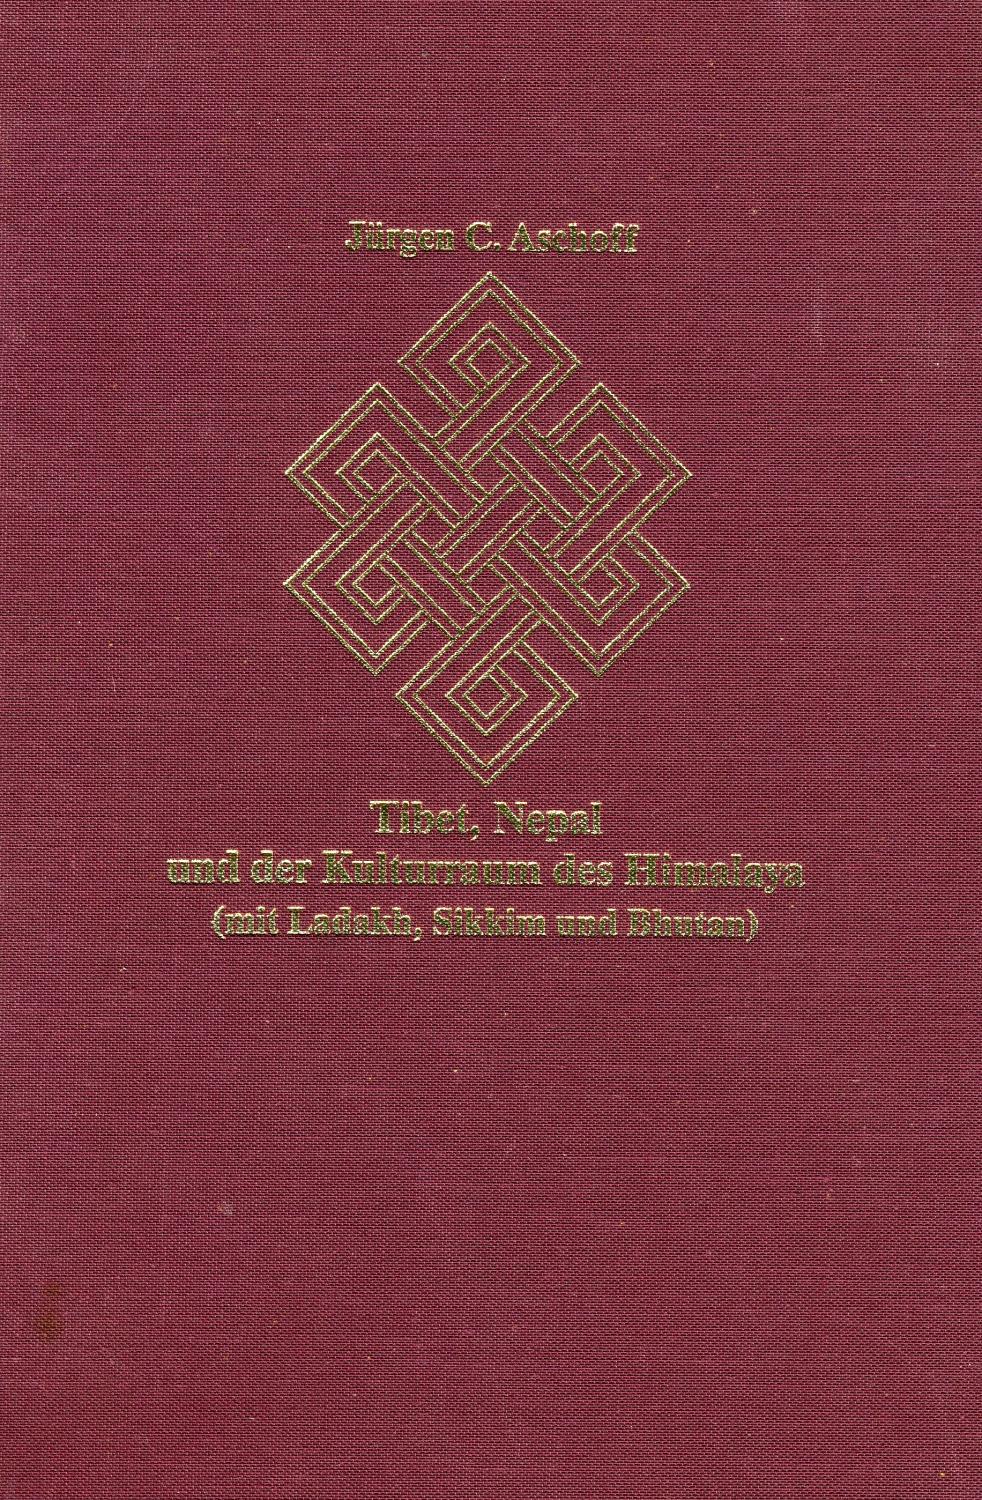 Tibet, Nepal und der Kulturraum des Himalaya. Kommentierte Bibliographie von 1627-1990 - Jürgen C. Aschoff